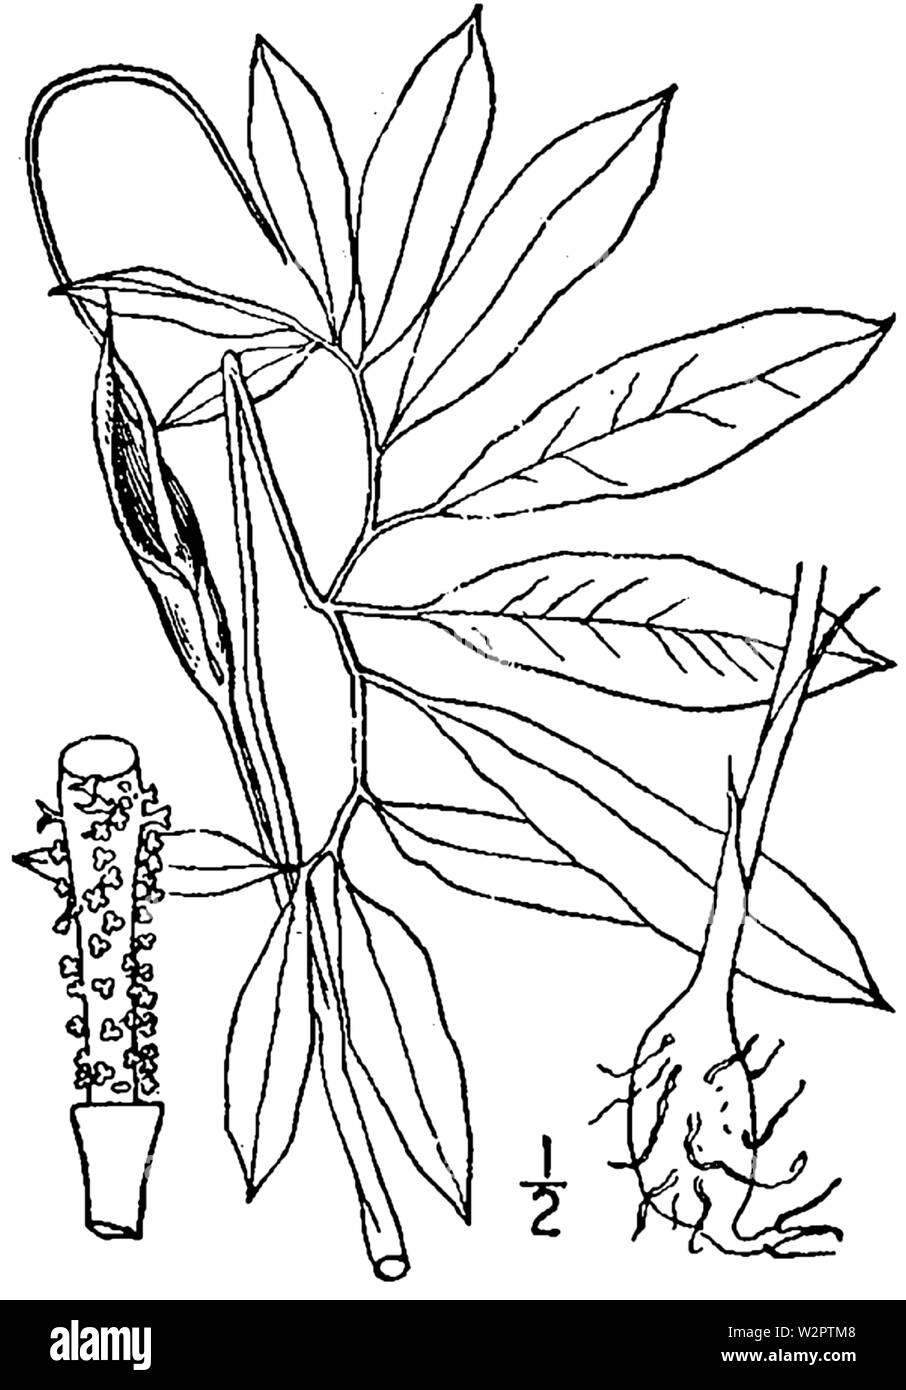 Botanical illustration of Arisaema dracontium from 1913. Stock Photo